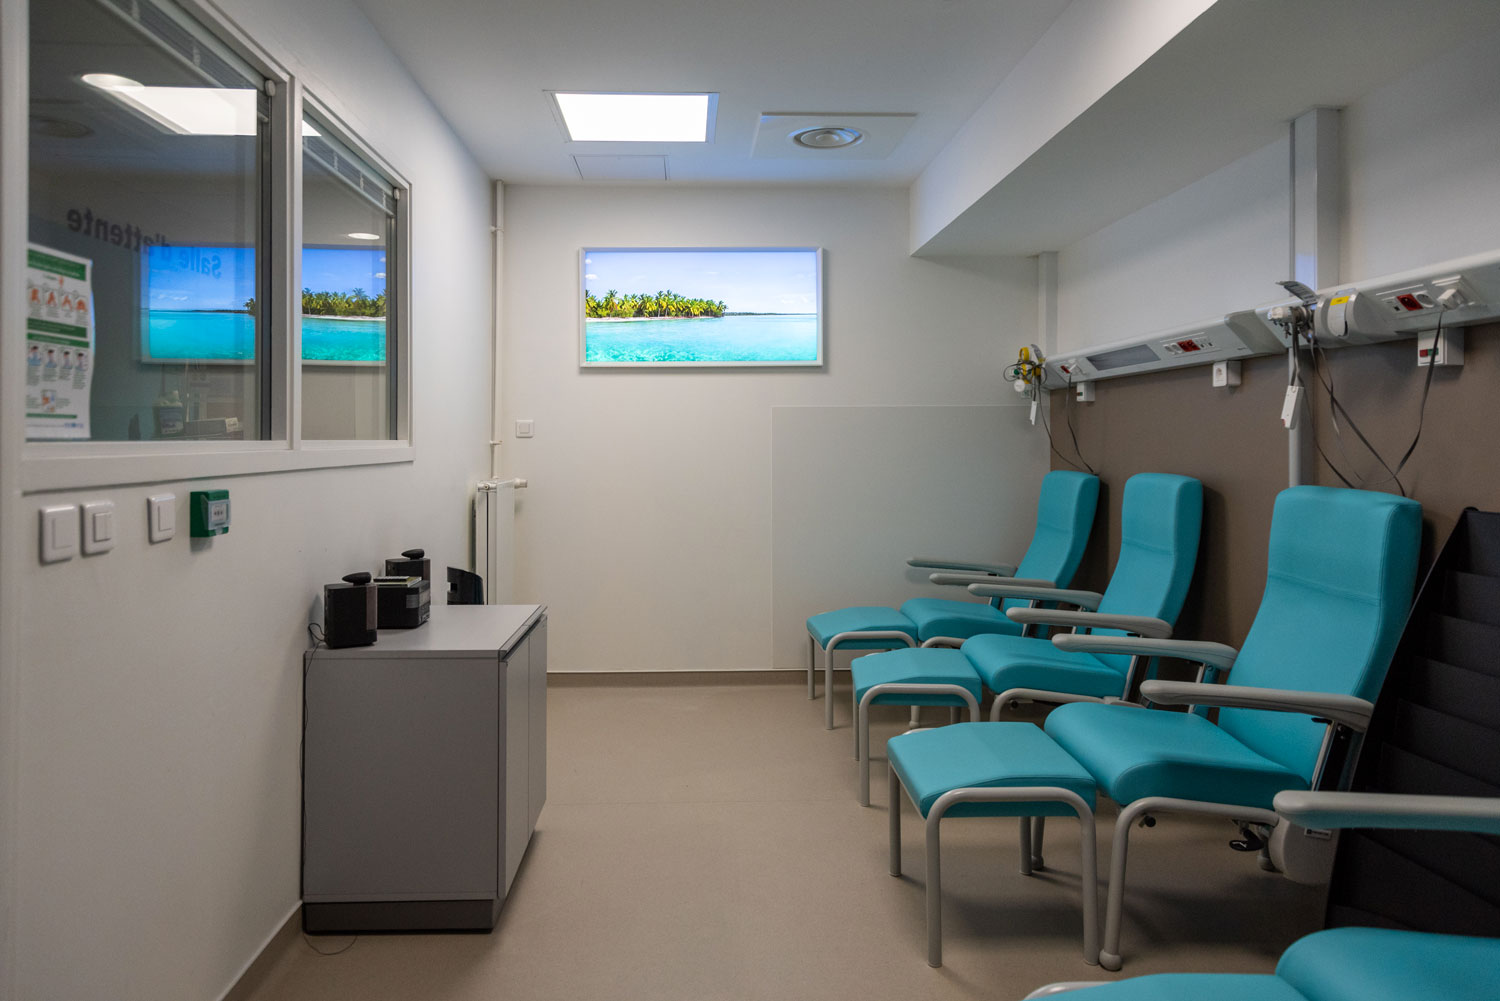 Fenêtre virtuelle horizontale Cumulux pour illuminer et habiller une salle d'attente de l'hôpital Pitié-Salpêtrière à Paris.